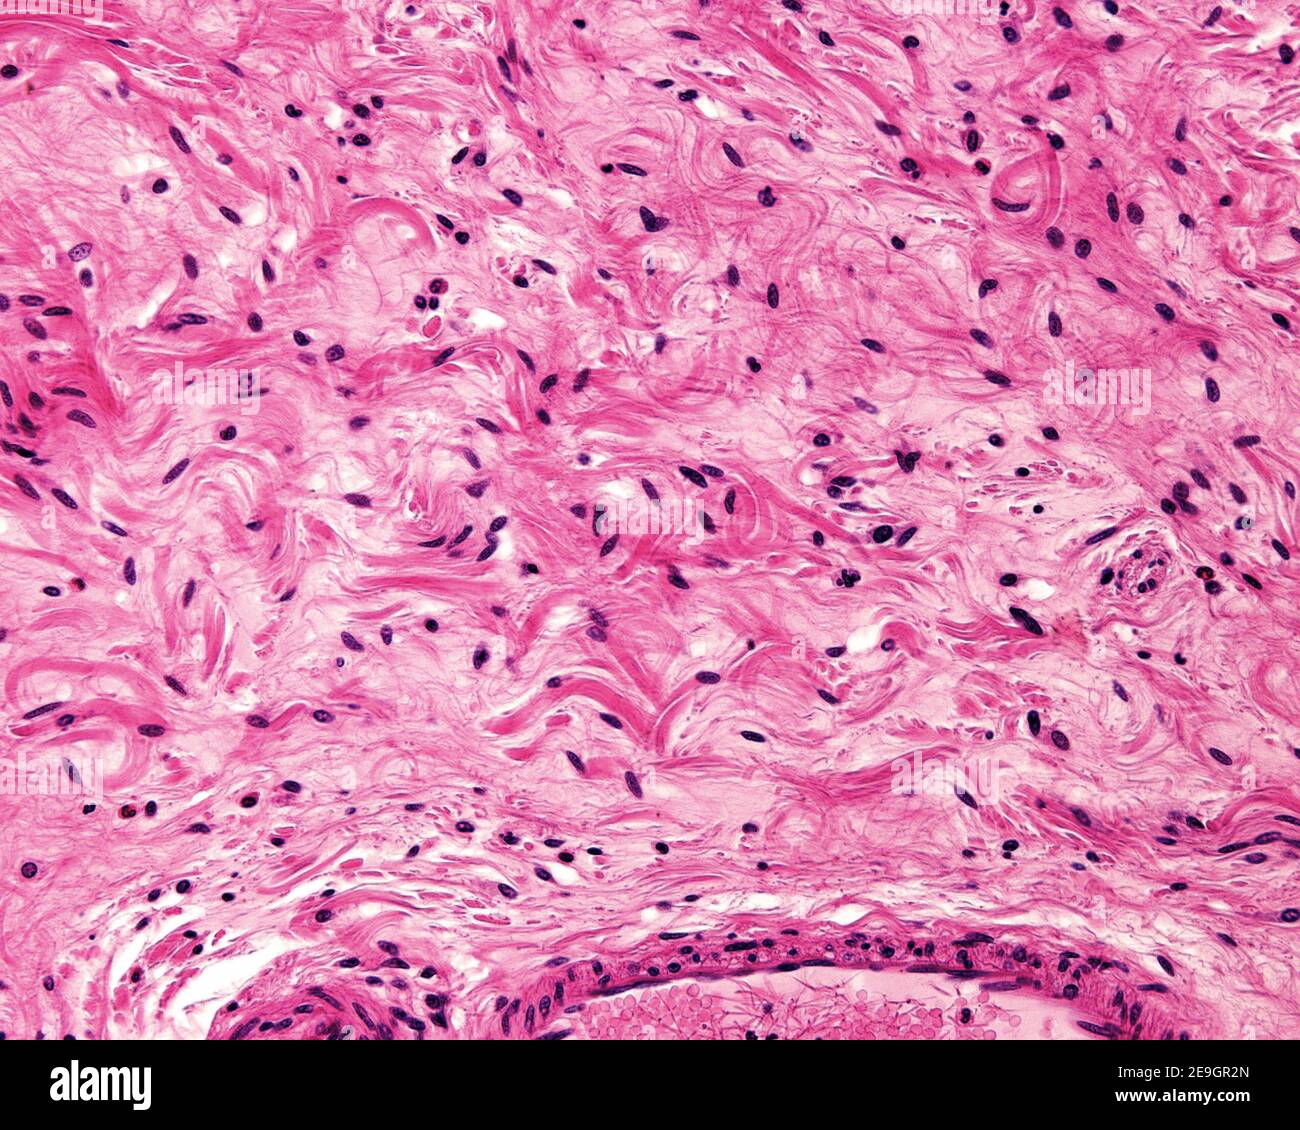 Exemple d'un tissu conjonctif généralement lâche appartenant à la sous-muqueuse de l'estomac. Le collagène apparaît comme des fibres isolées et des faisceaux de fibres ondulés. Banque D'Images